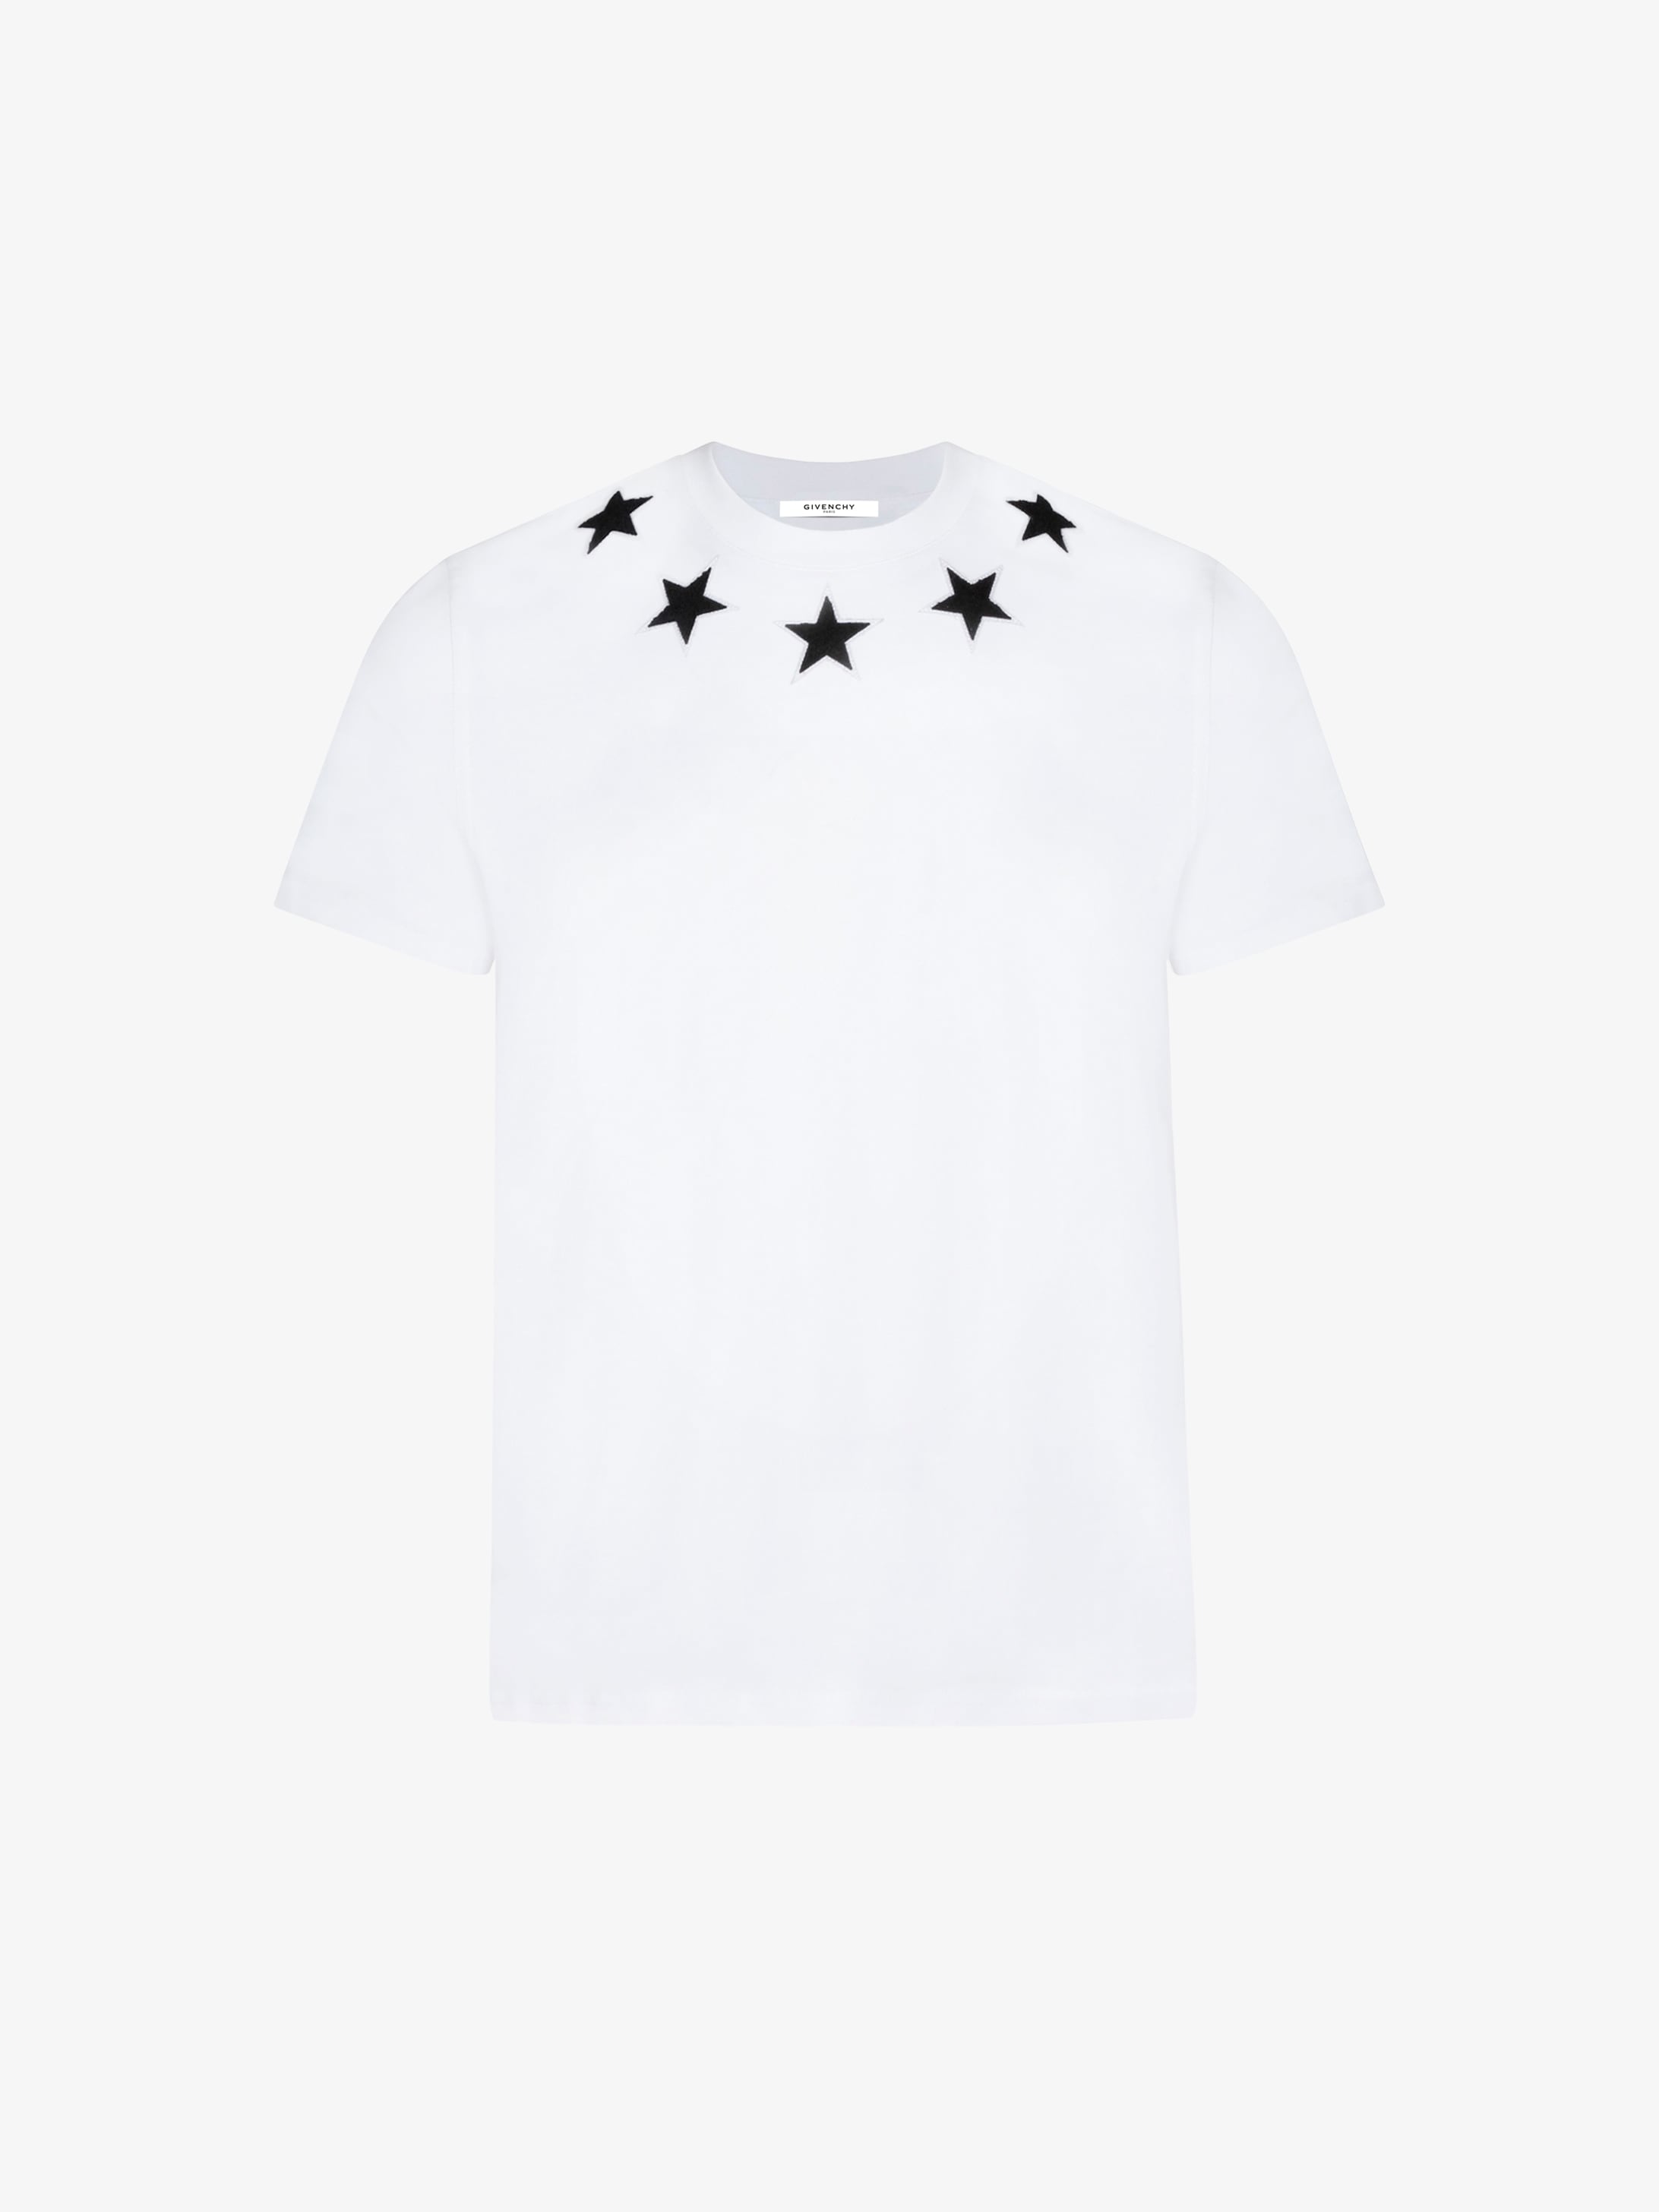 givenchy star shirt\u003e OFF-53%